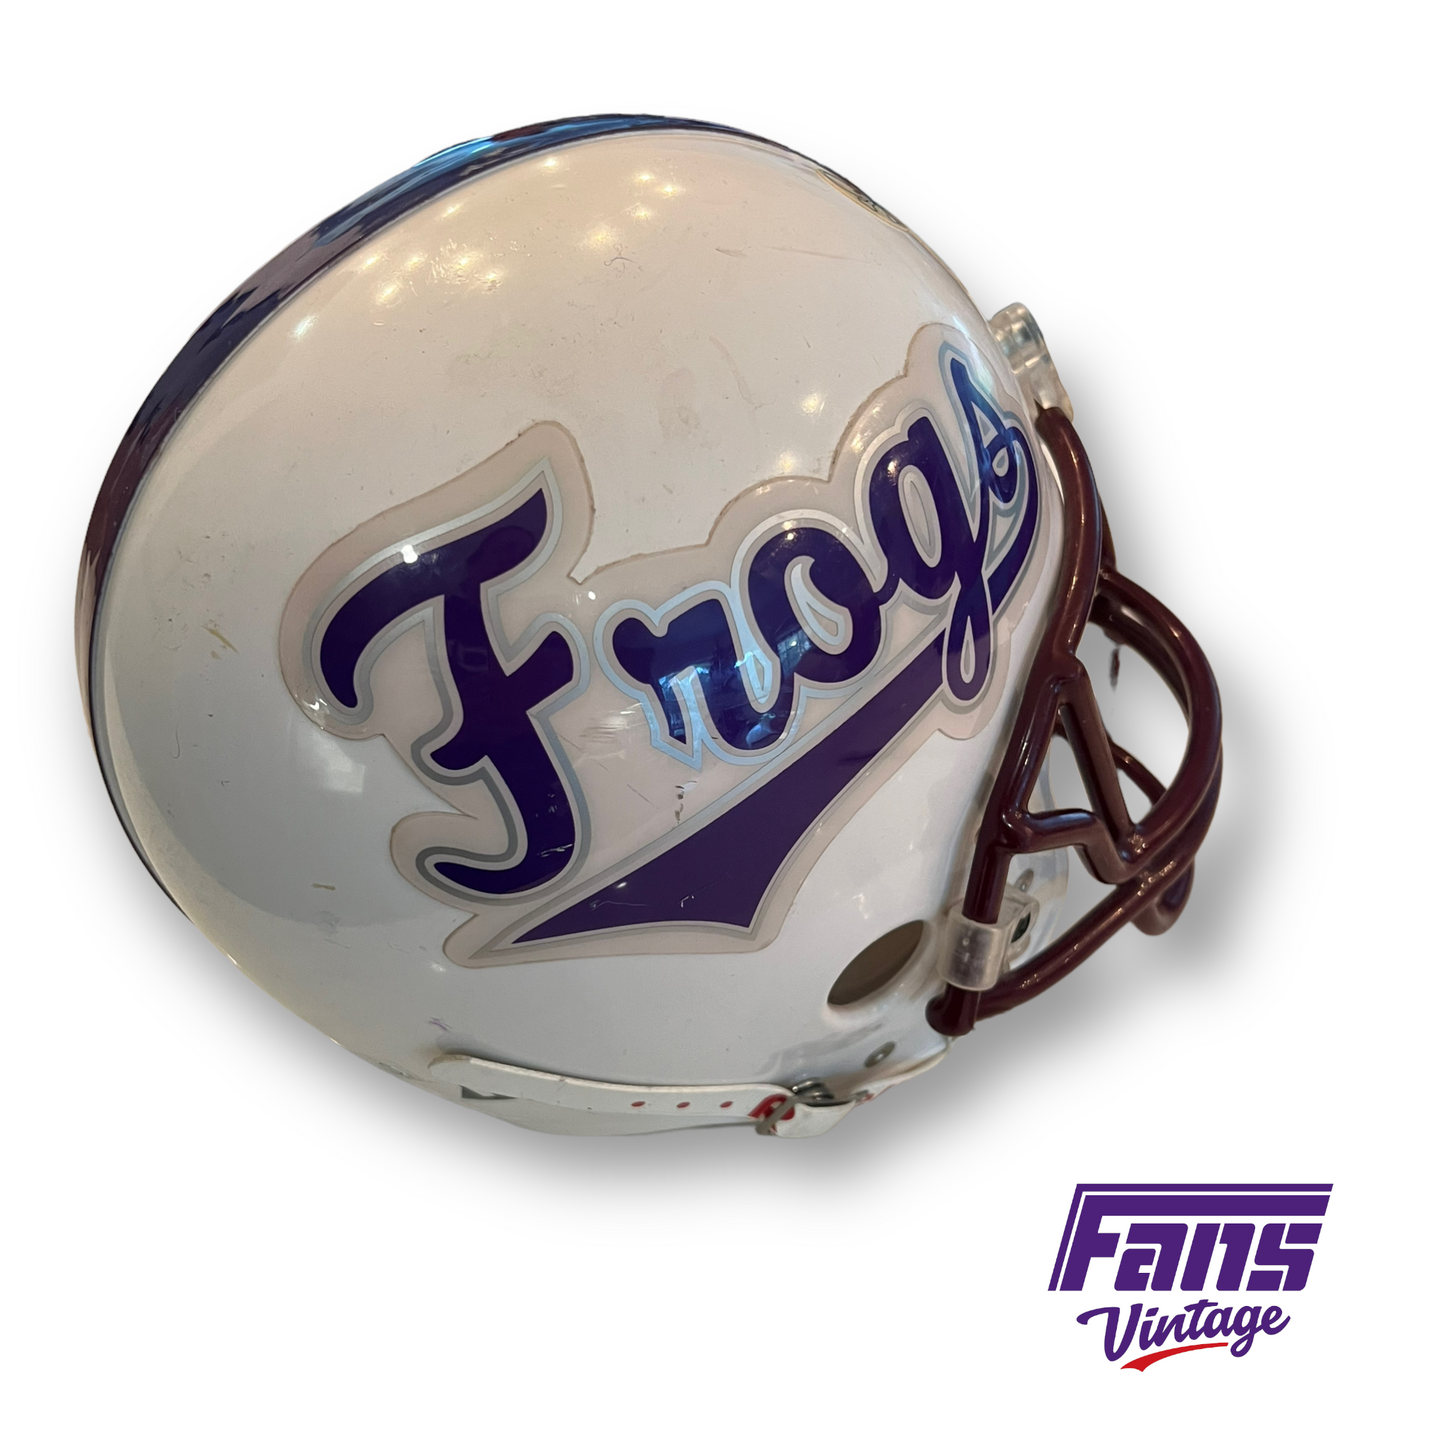 Unique! Script font "Frogs" Vintage 80s Football Helmet